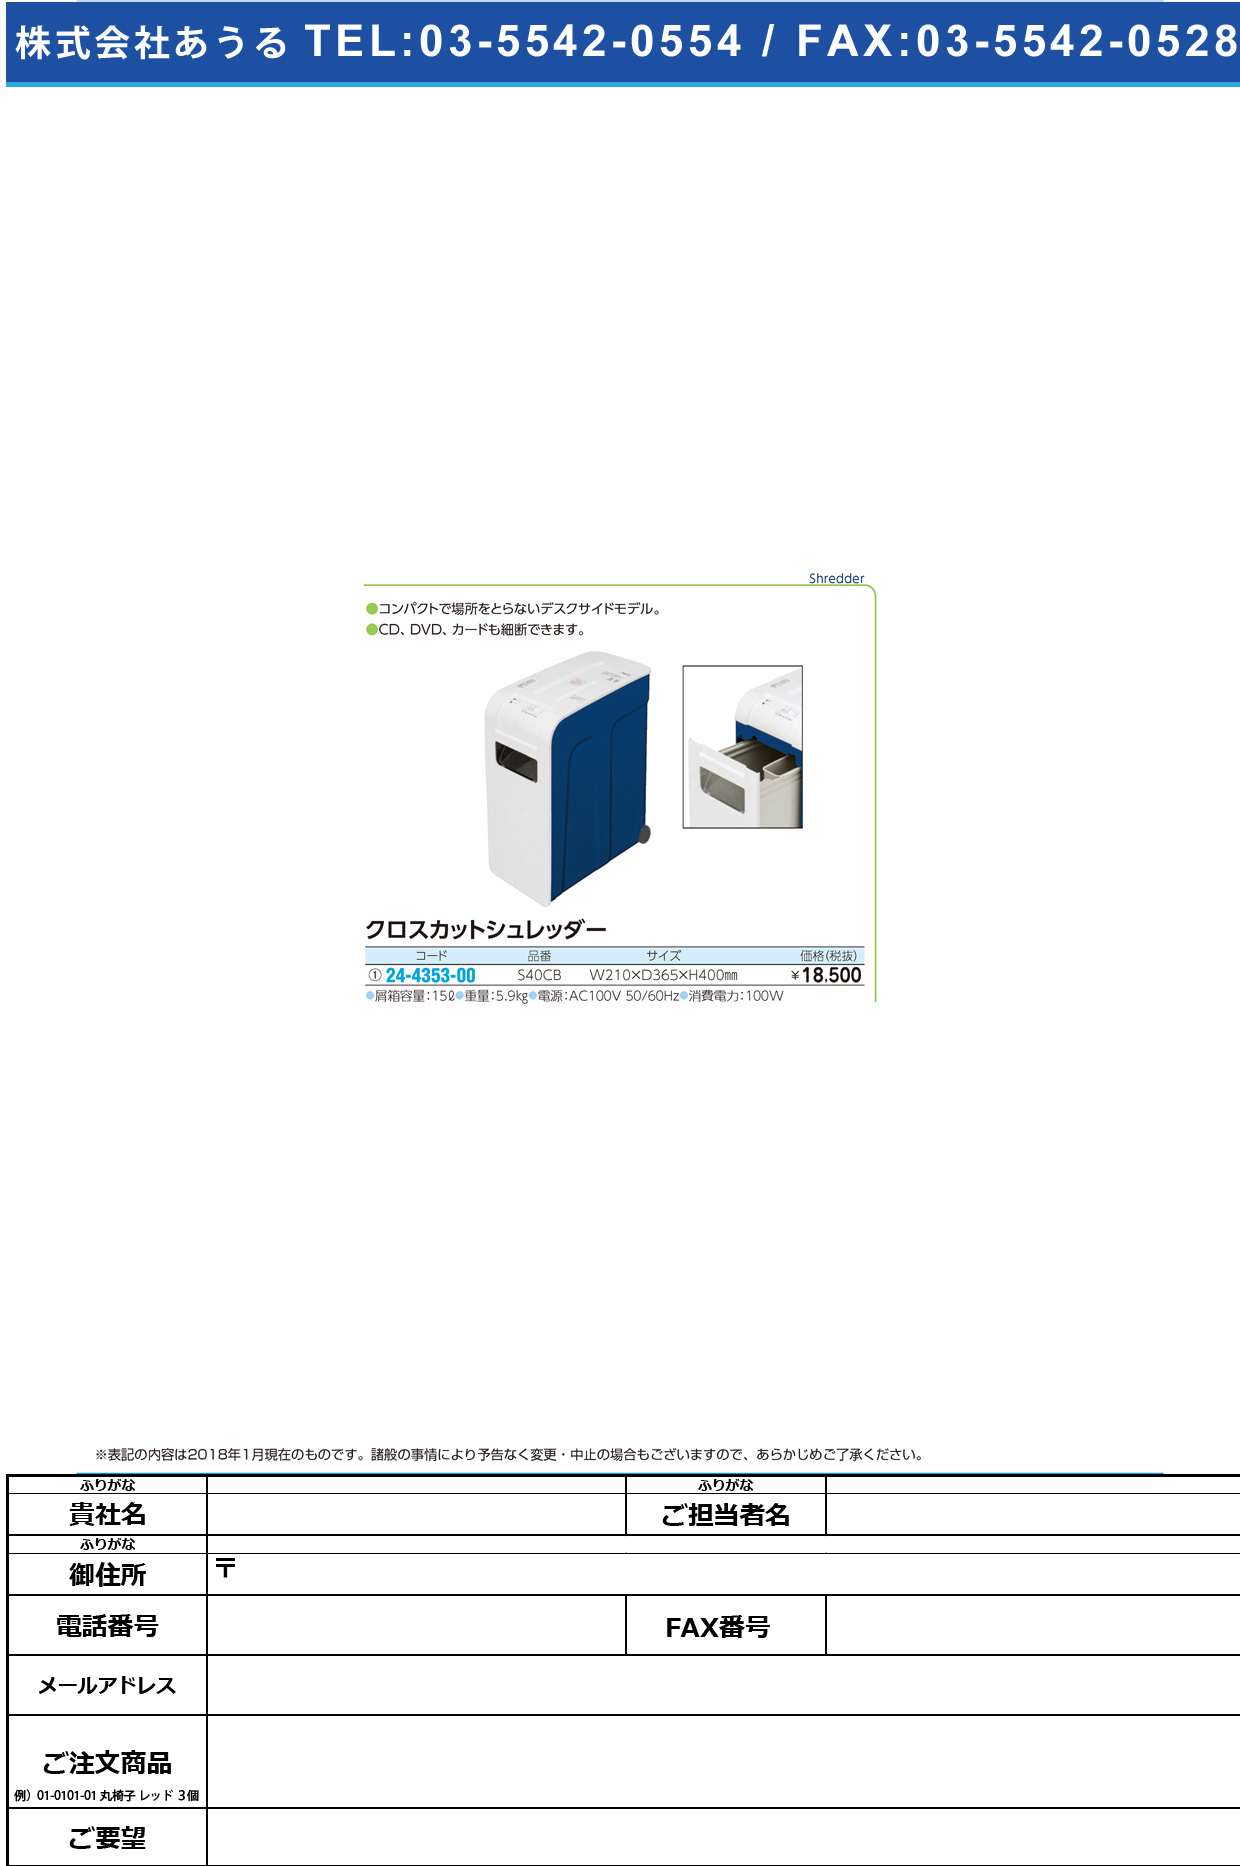 (24-4353-00)クロスカットシュレッダー S40CB ｸﾛｽｶｯﾄｼｭﾚｯﾀﾞｰ【1台単位】【2018年カタログ商品】